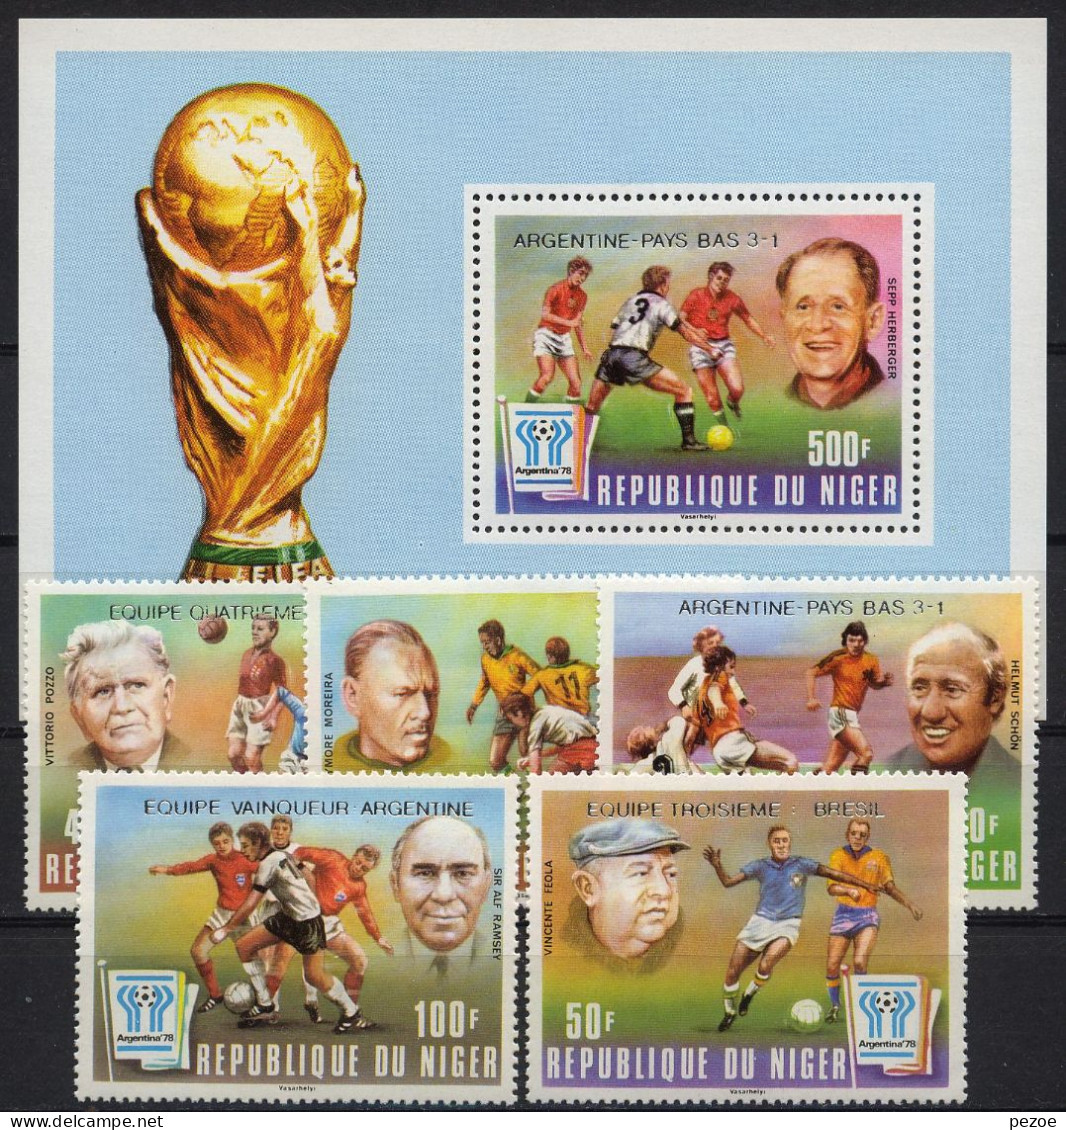 Football / Soccer / Fussball - WM 1978: Niger  5 W + Bl **, Silber Aufdruck - 1978 – Argentine